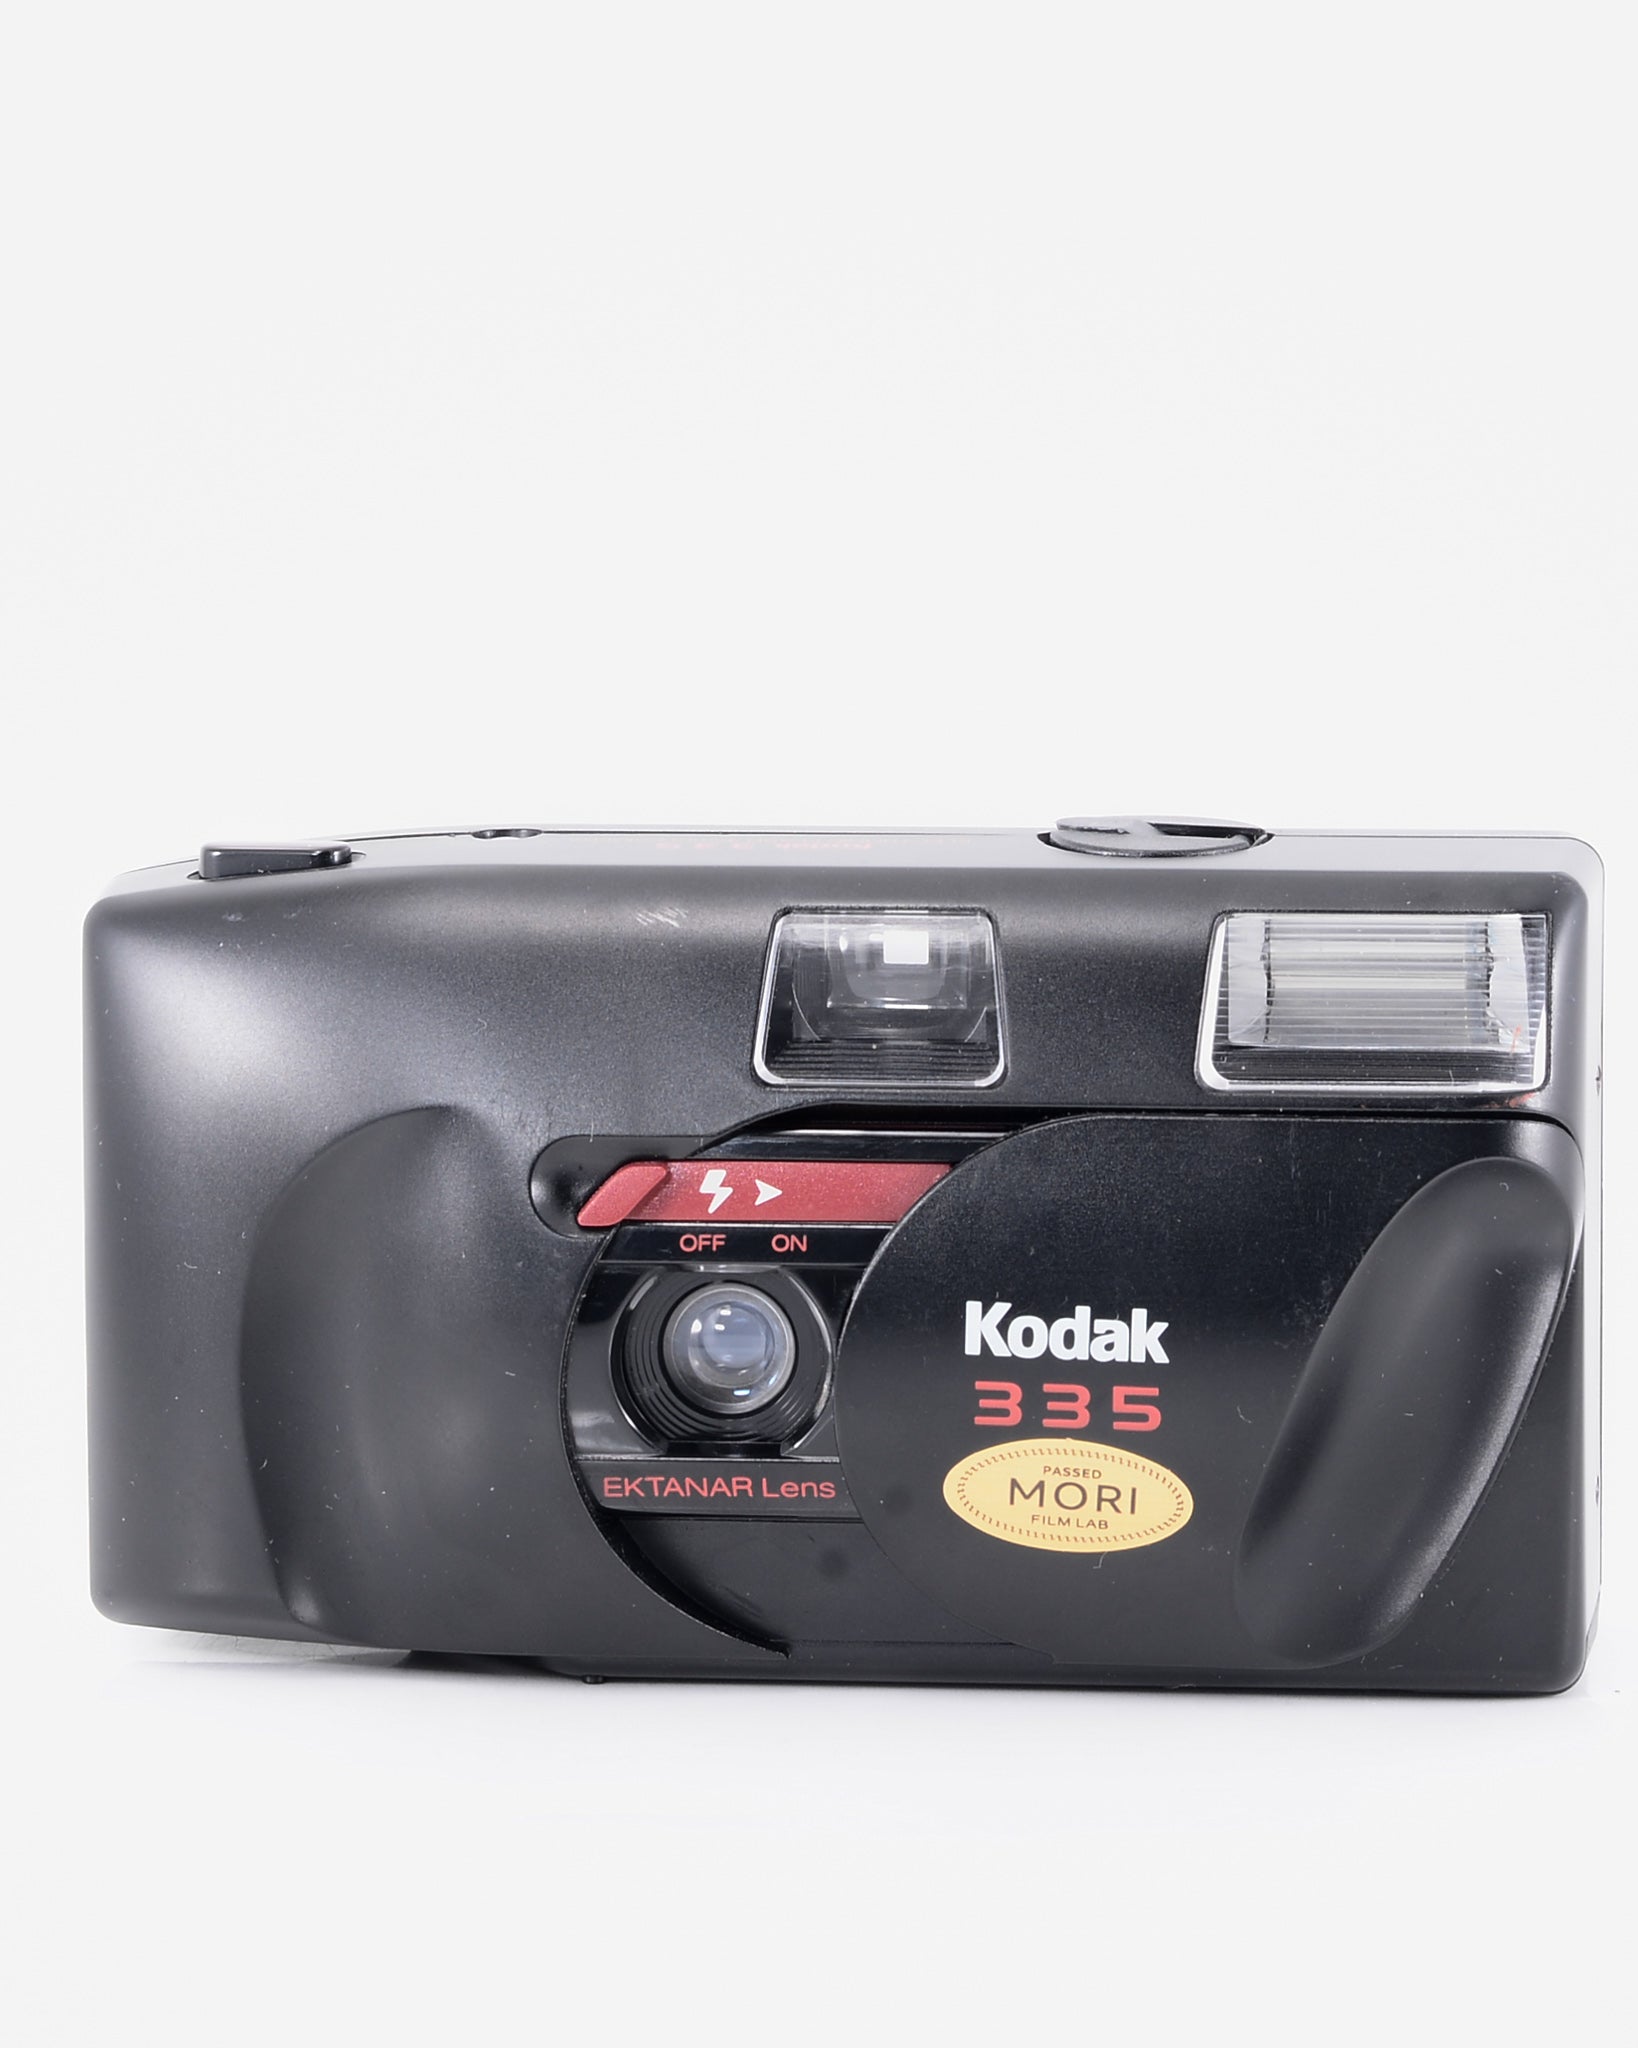 Kodak 335 35mm point & shoot camera